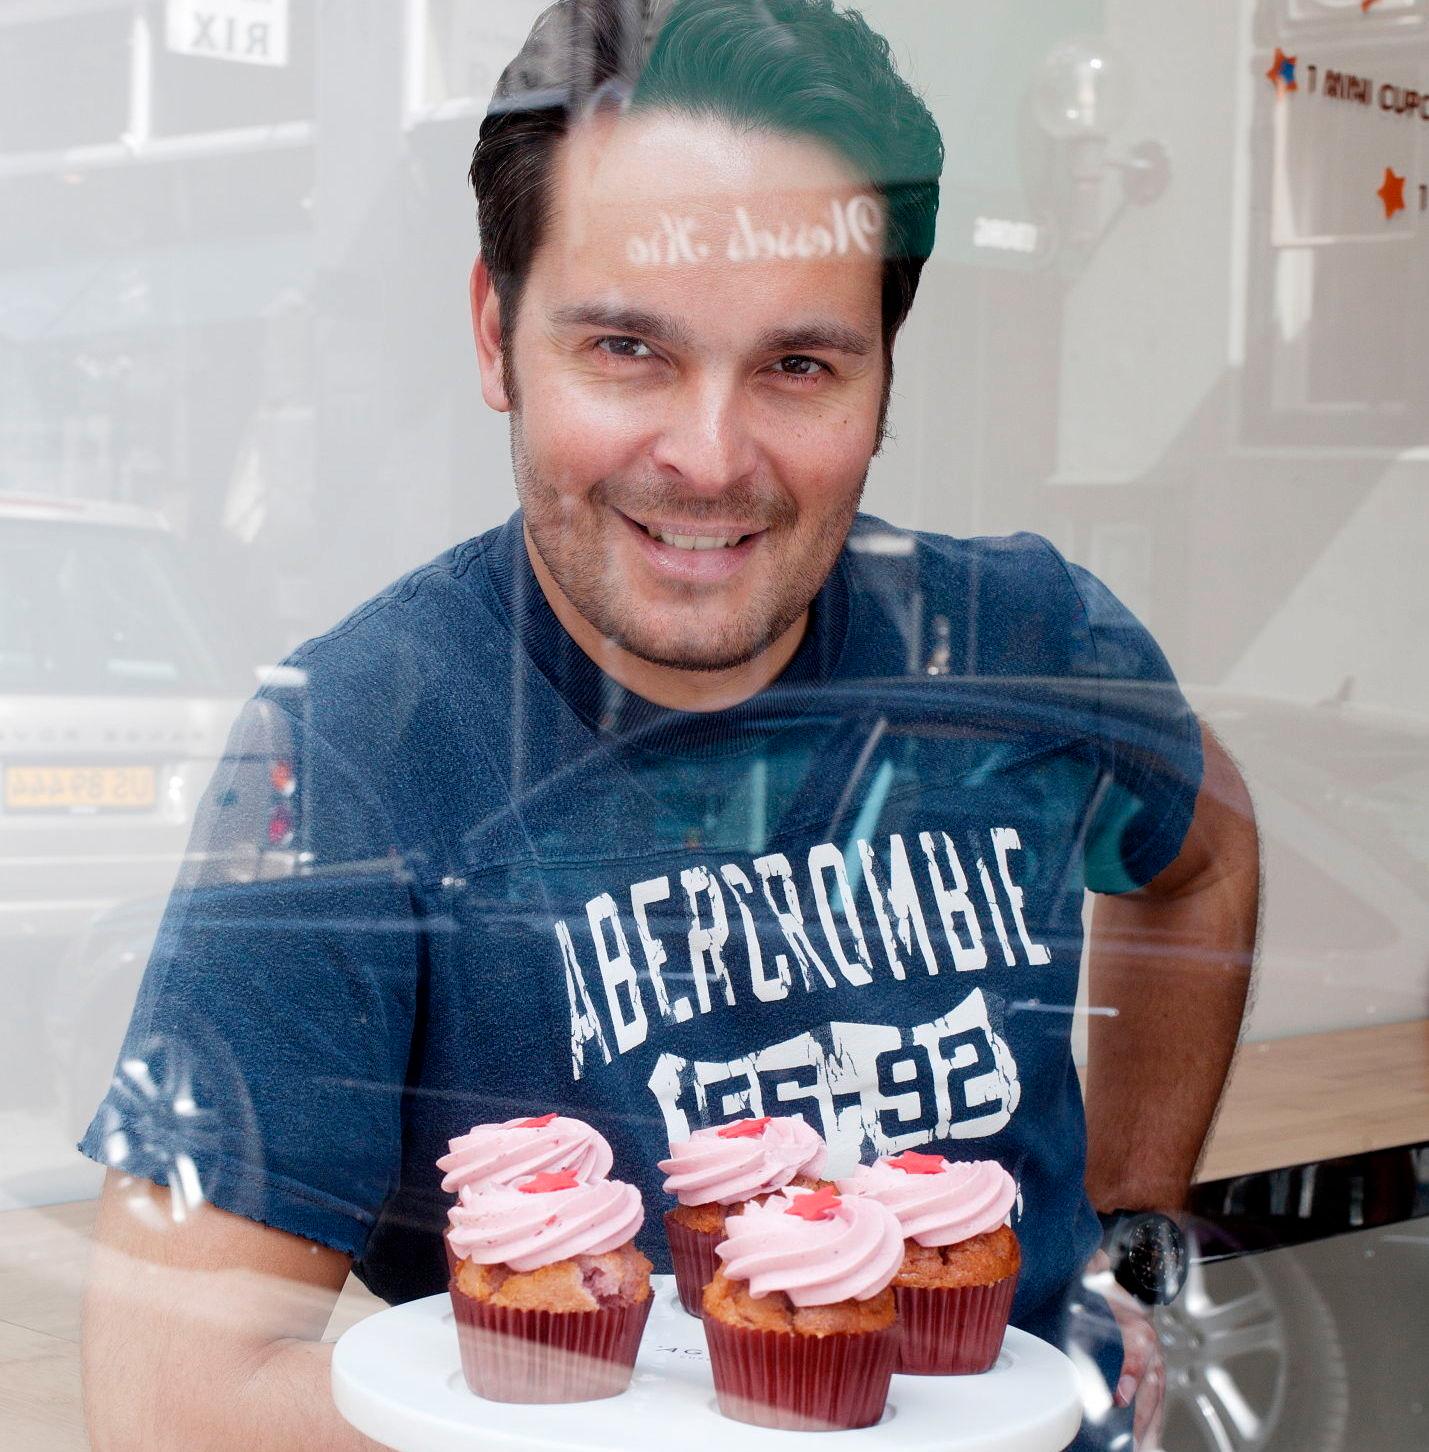 KAKEMAKER: New York inspirerte Kristian Vangsgaard til å åpne cupcakebakeri. Foto: Janne Møller-Hansen